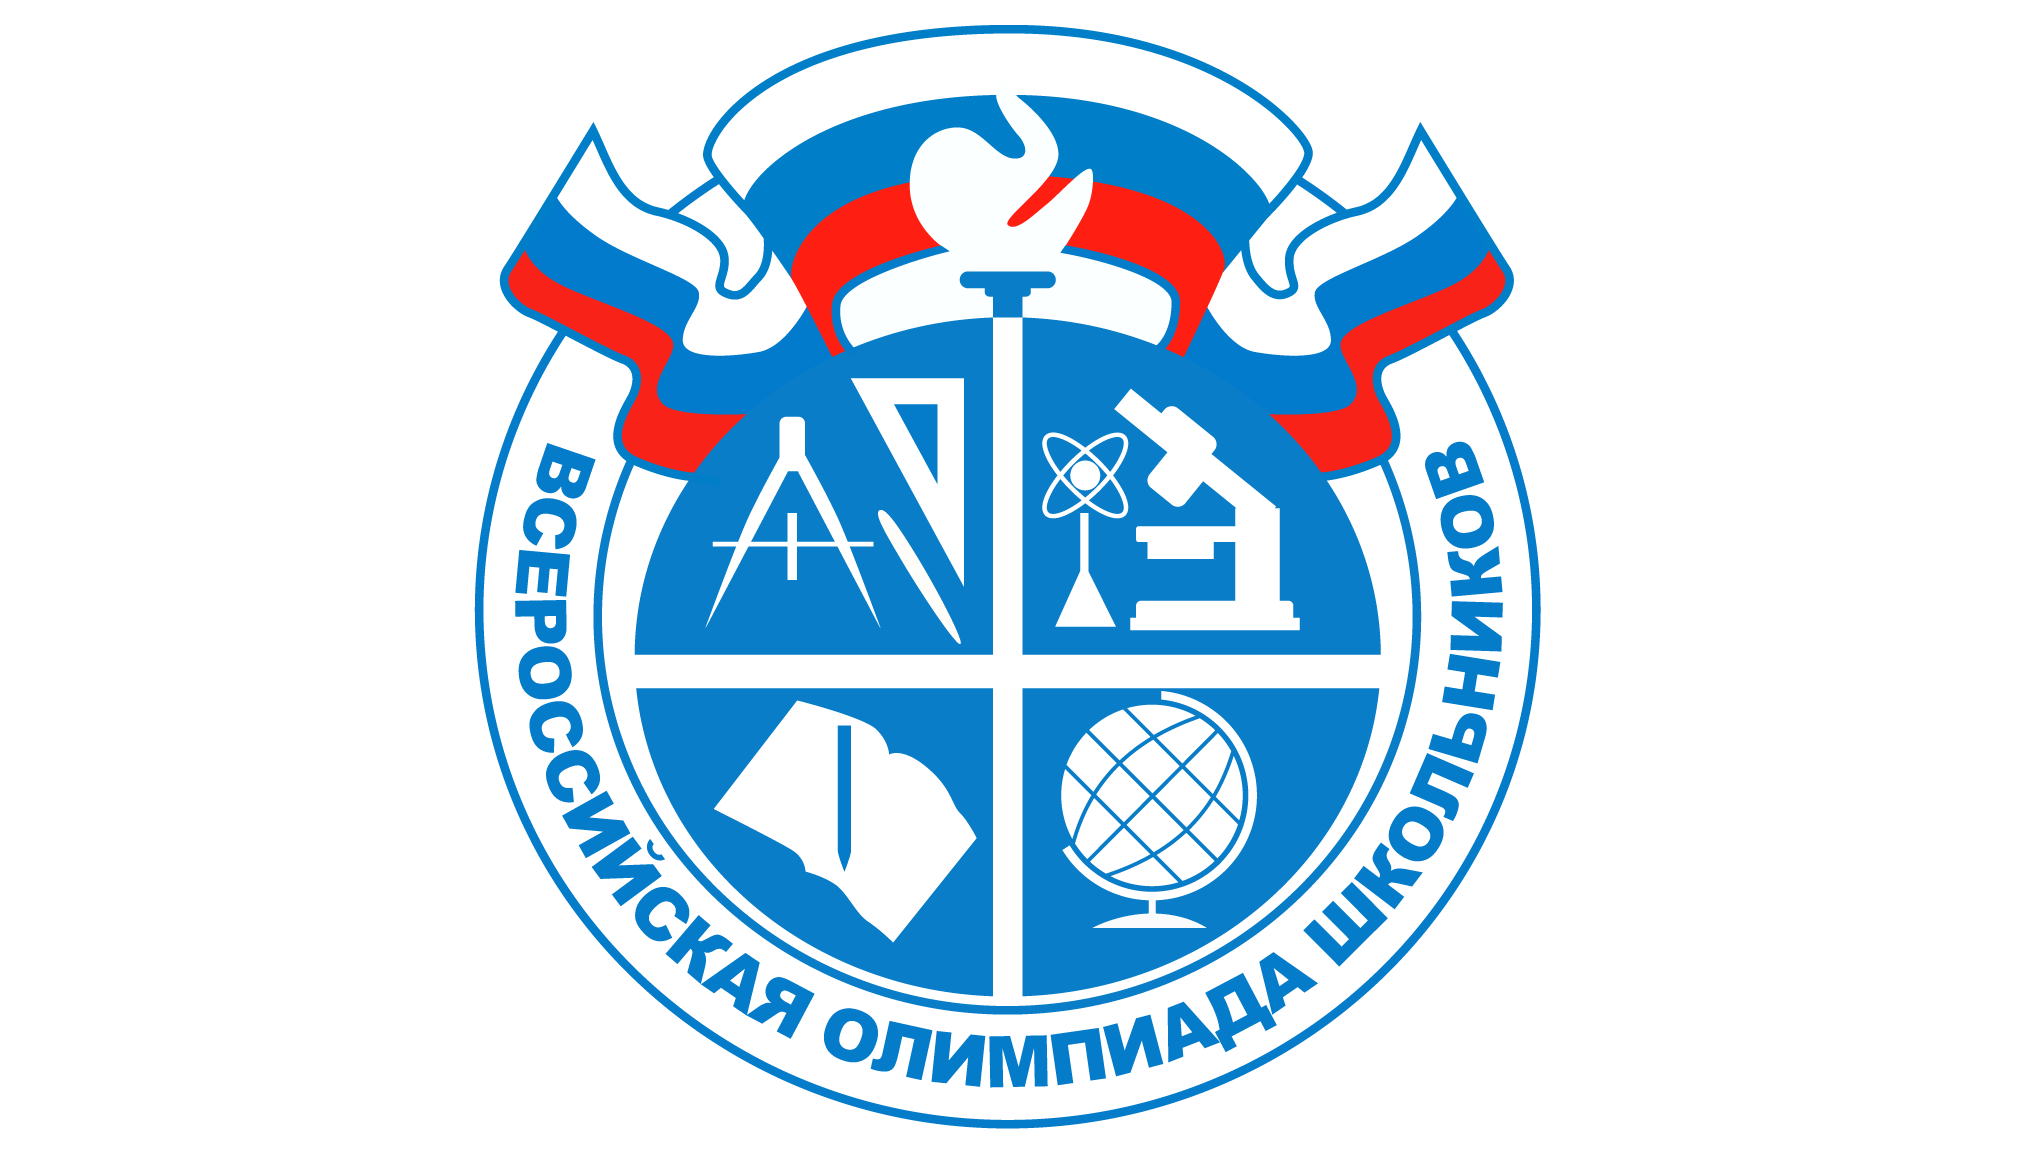 Всероссийская олимпиада школьников (муниципальный уровень).